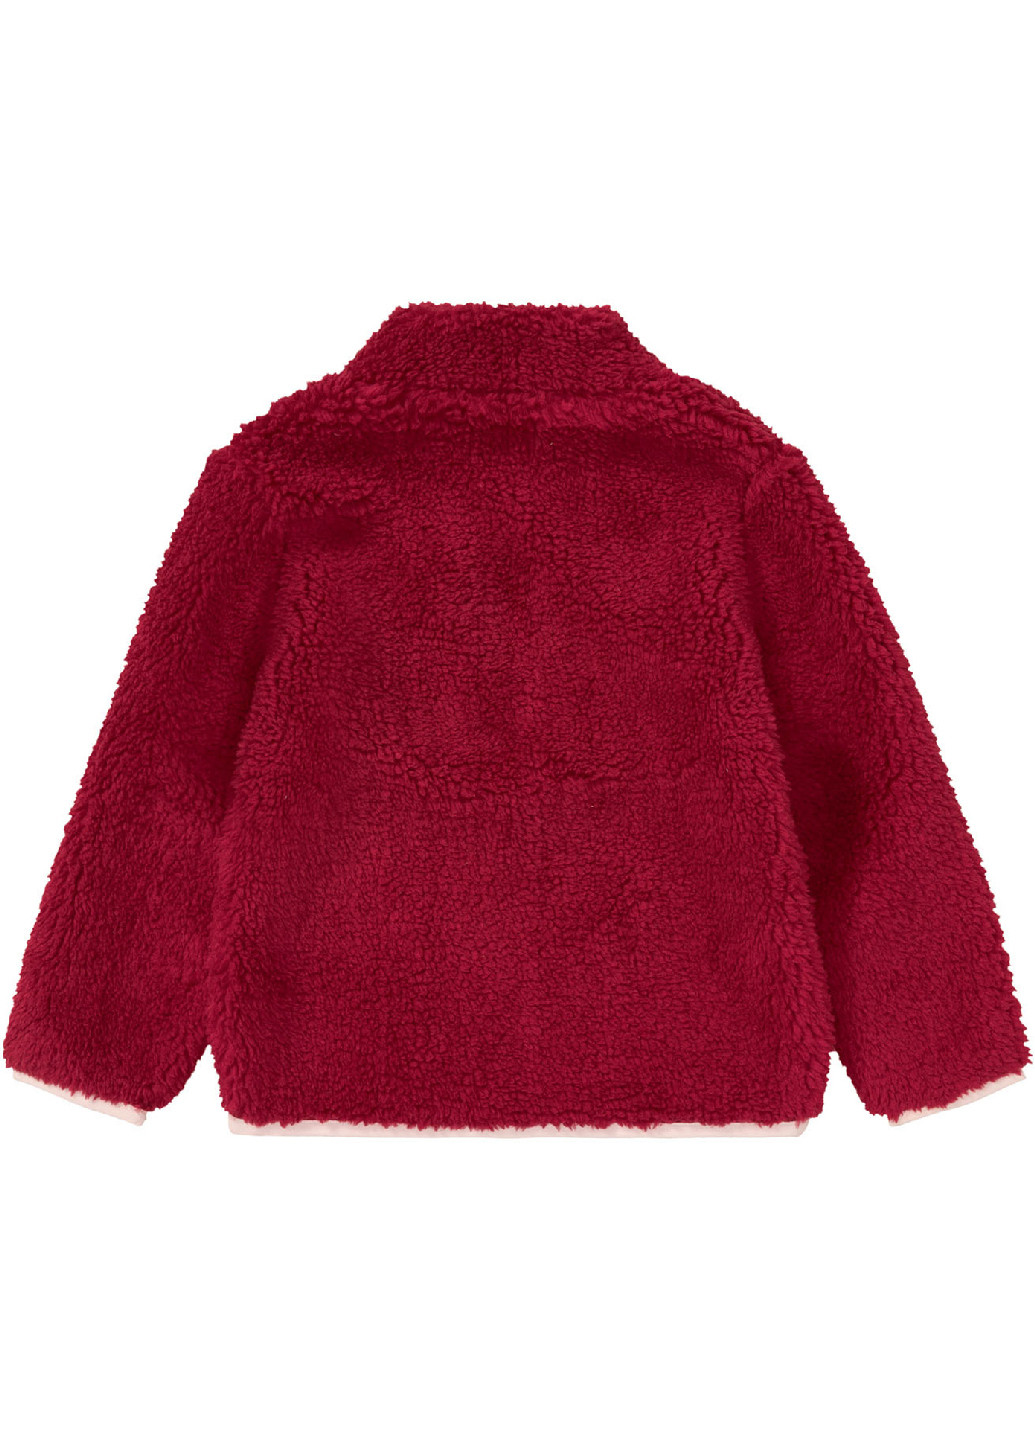 Красная демисезонная куртка Lupilu